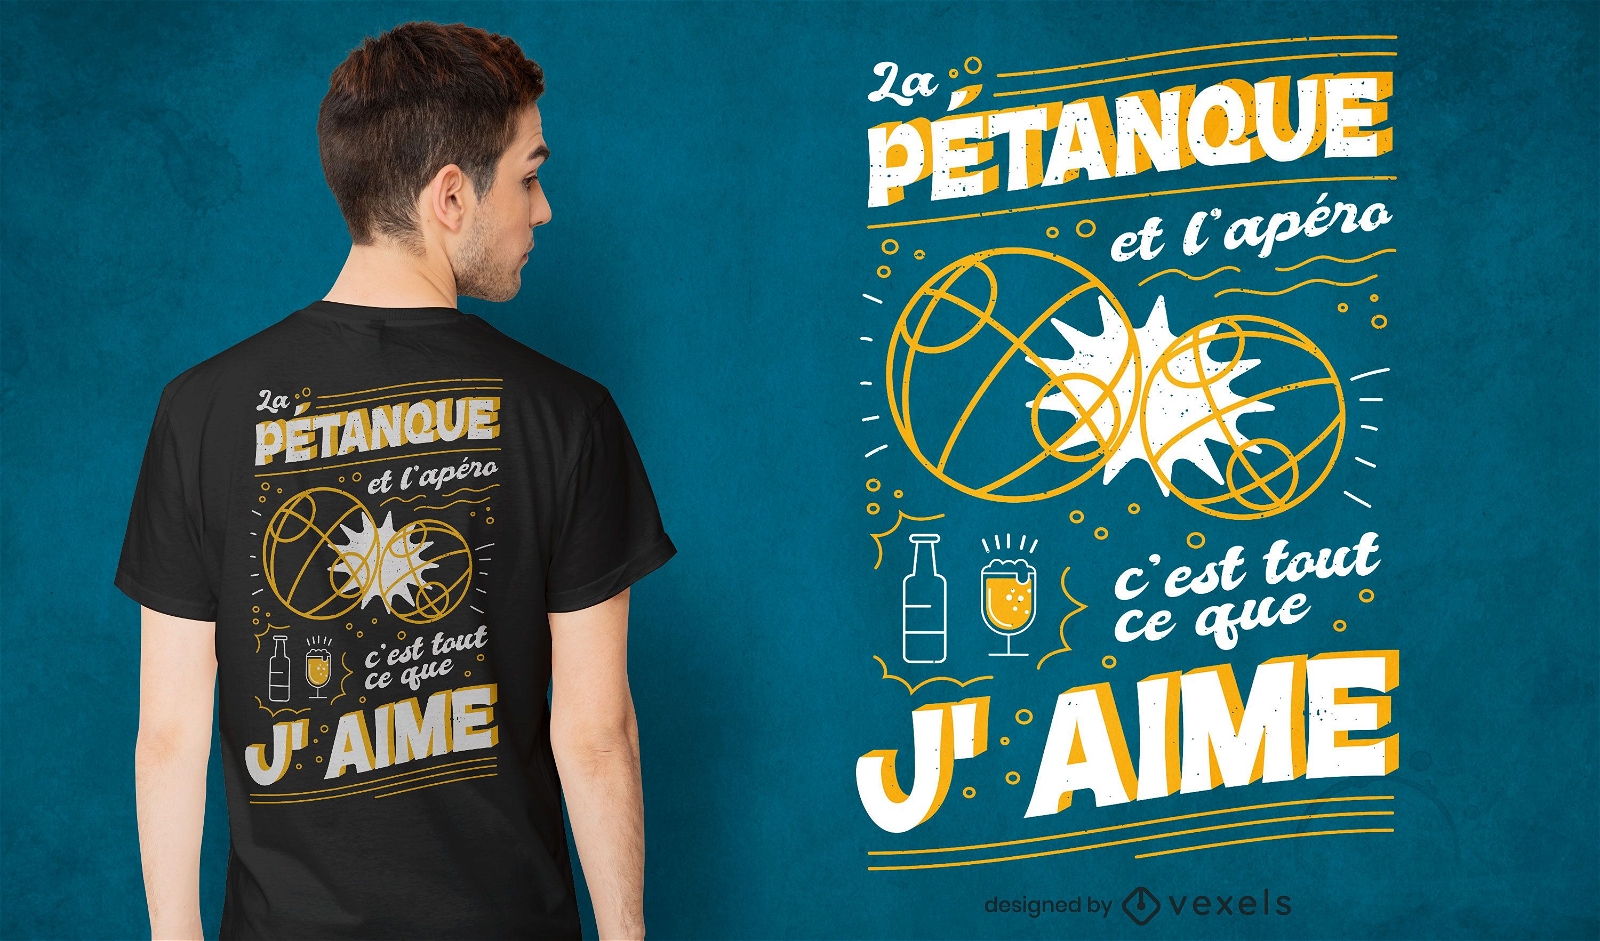 Franz?sisches Petanque-Zitat-T-Shirt-Design